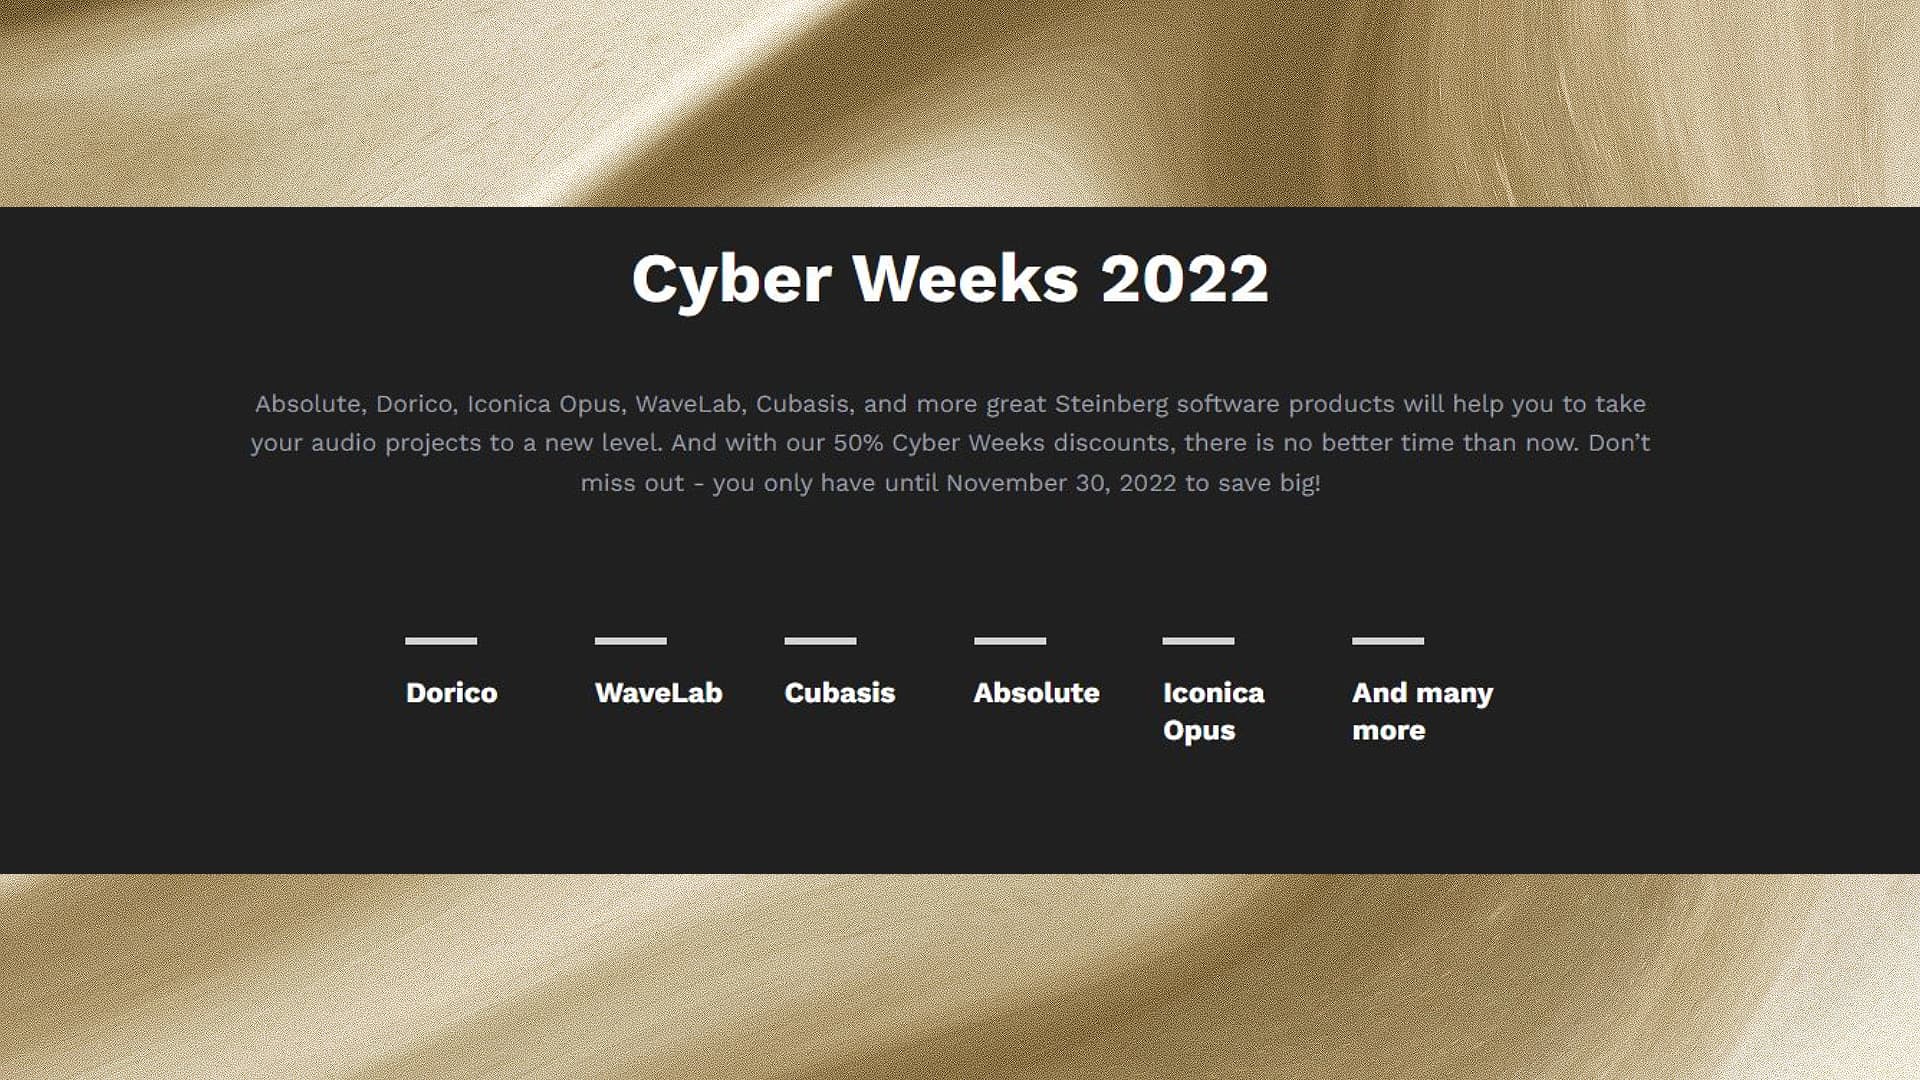 Steinberg Cyber Weeks 2022